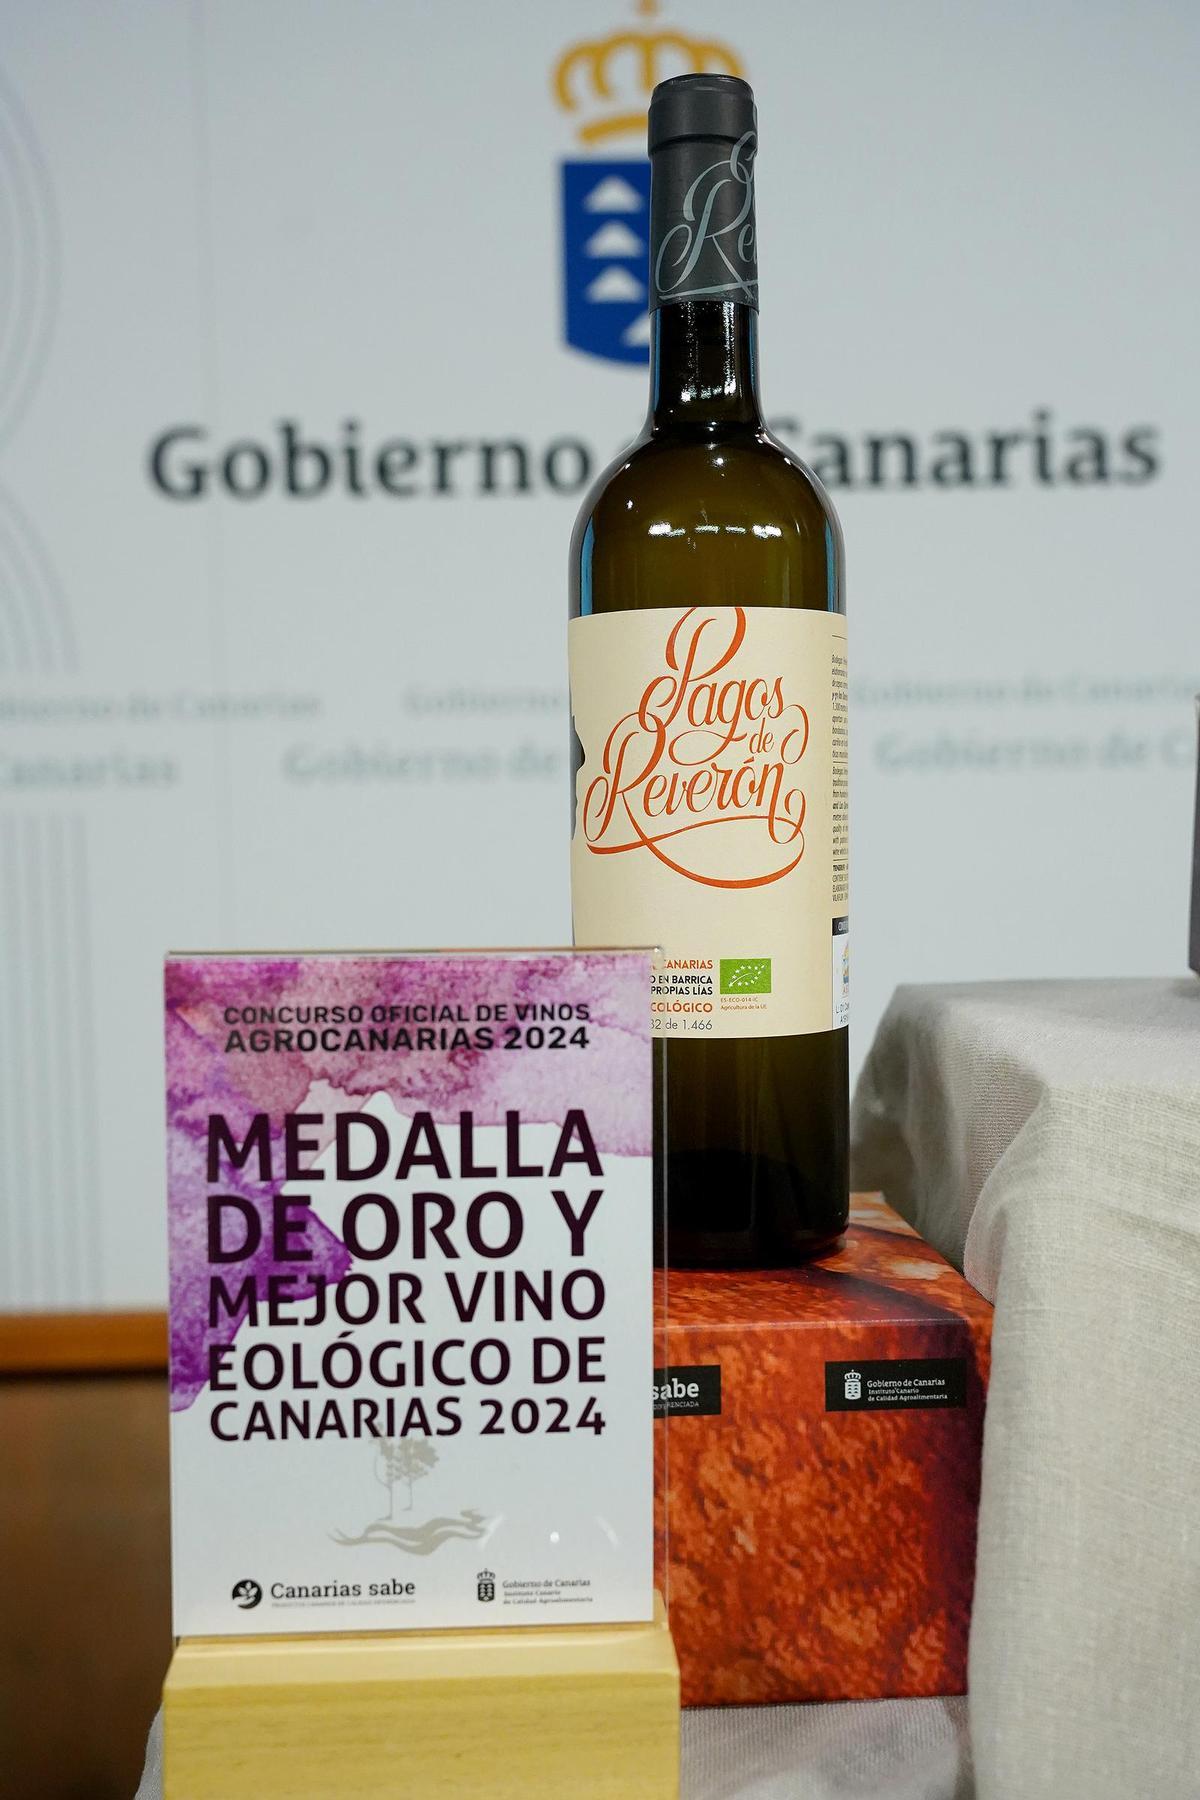 Pagos de Reverón, Mejor Vino Ecológico de Canarias.